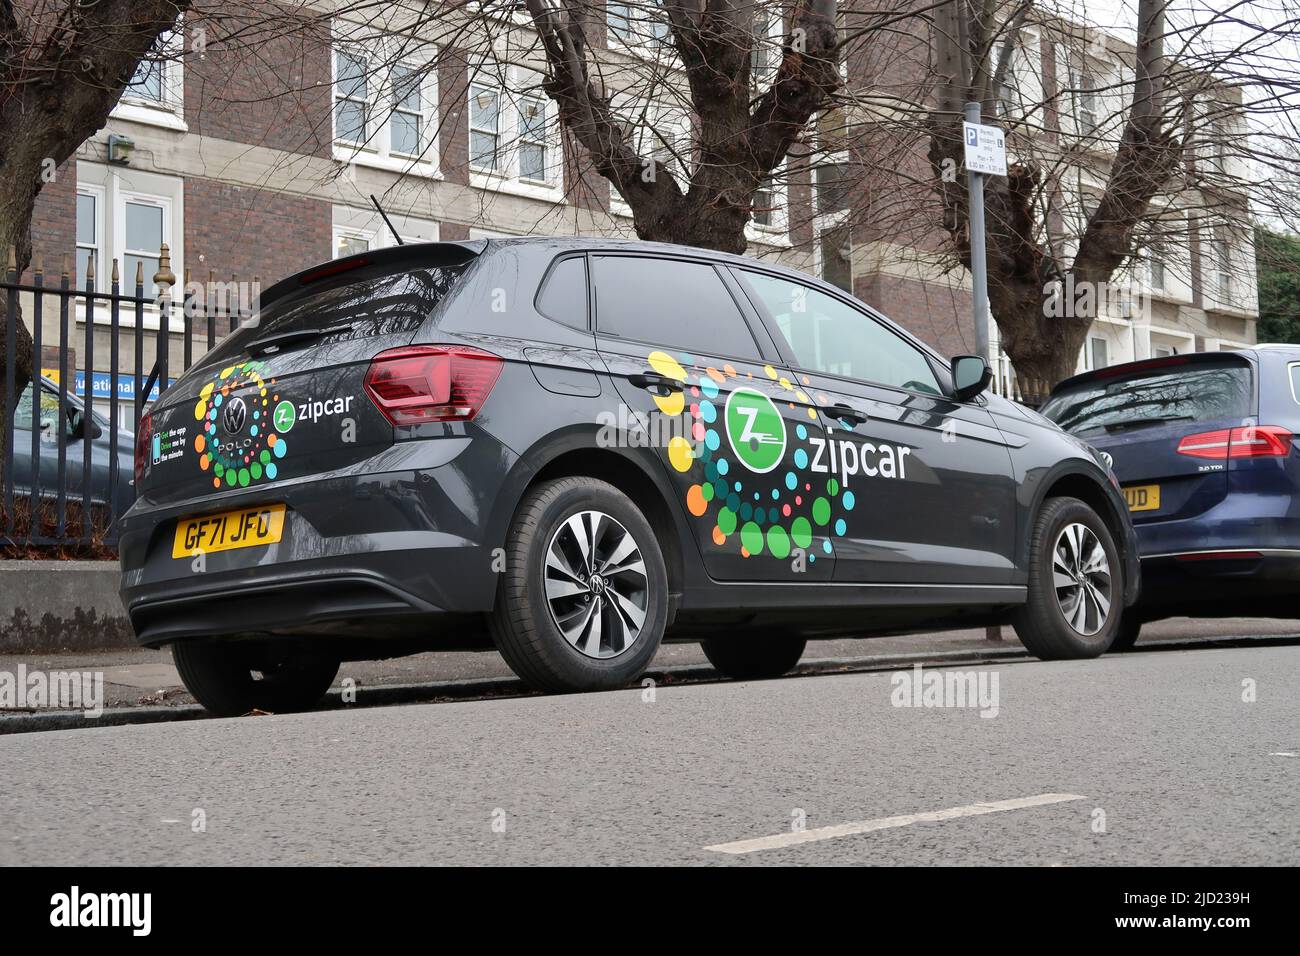 Londra, Regno Unito. Una Volkswagen Polo elettrica dall'auto-club Zipcar è parcheggiata su una strada residenziale a Camberwell. Foto Stock